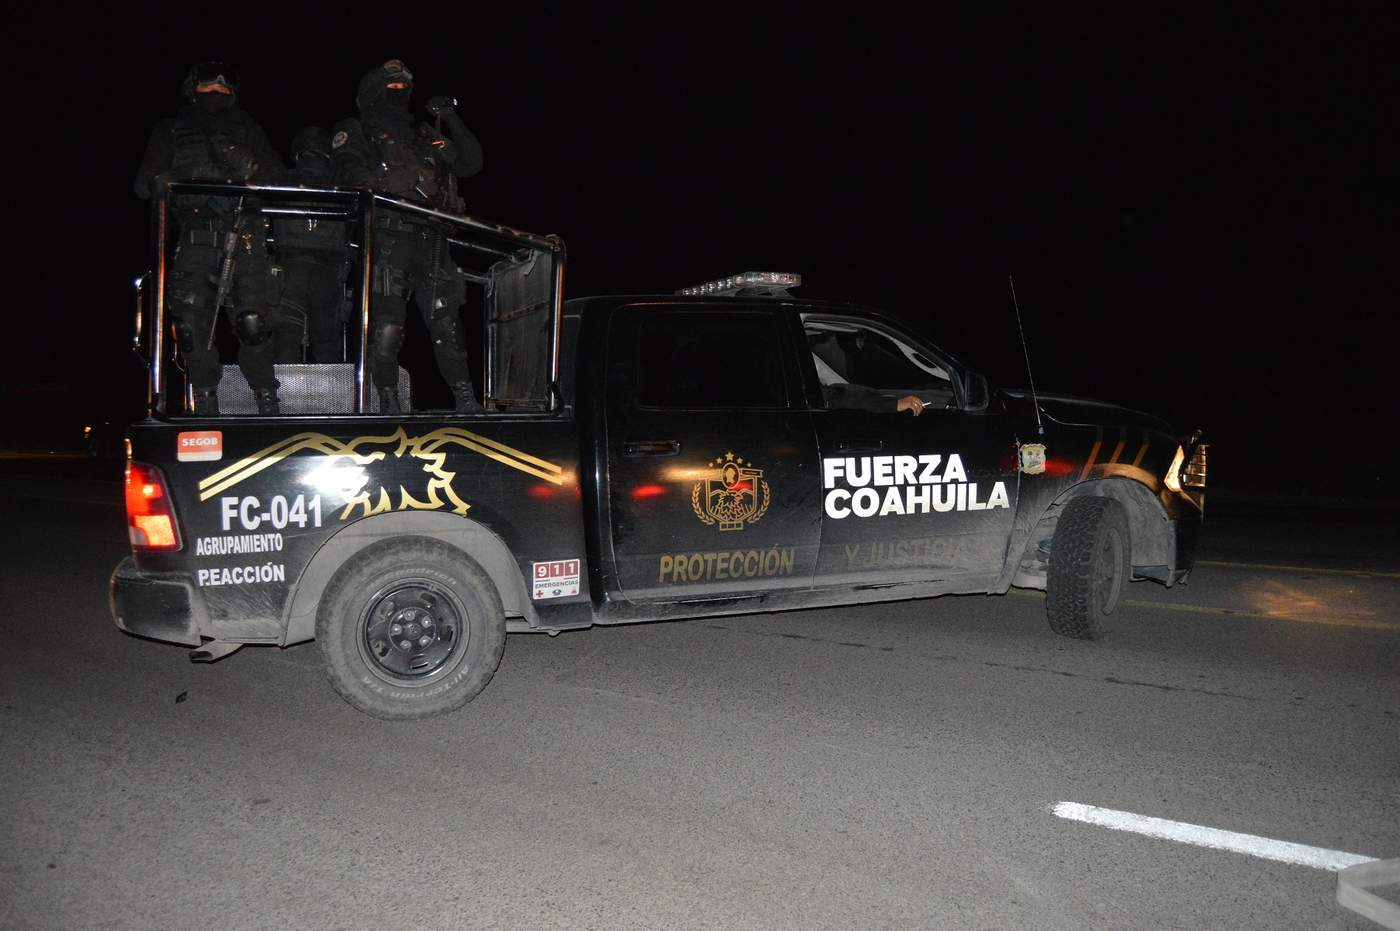 Una unidad de Fuerza Coahuila acudió en apoyo y sus ocupantes fueron recibidos con disparos de arma de fuego. (ARCHIVO)